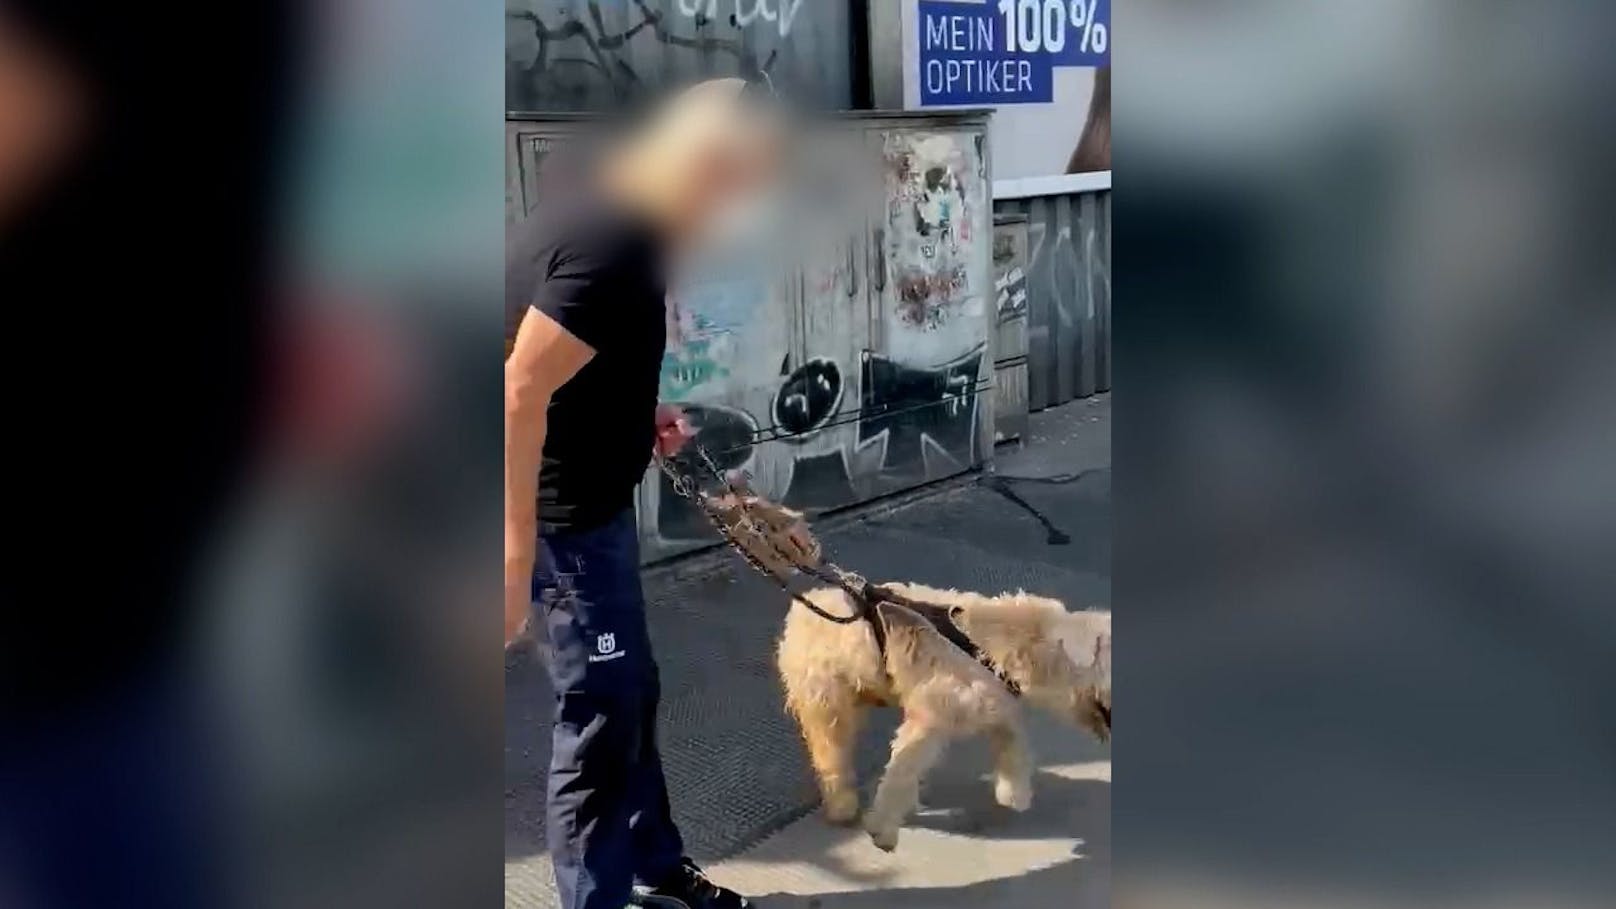 Er schlug mit der Zeitung auf seinen Hund ein.